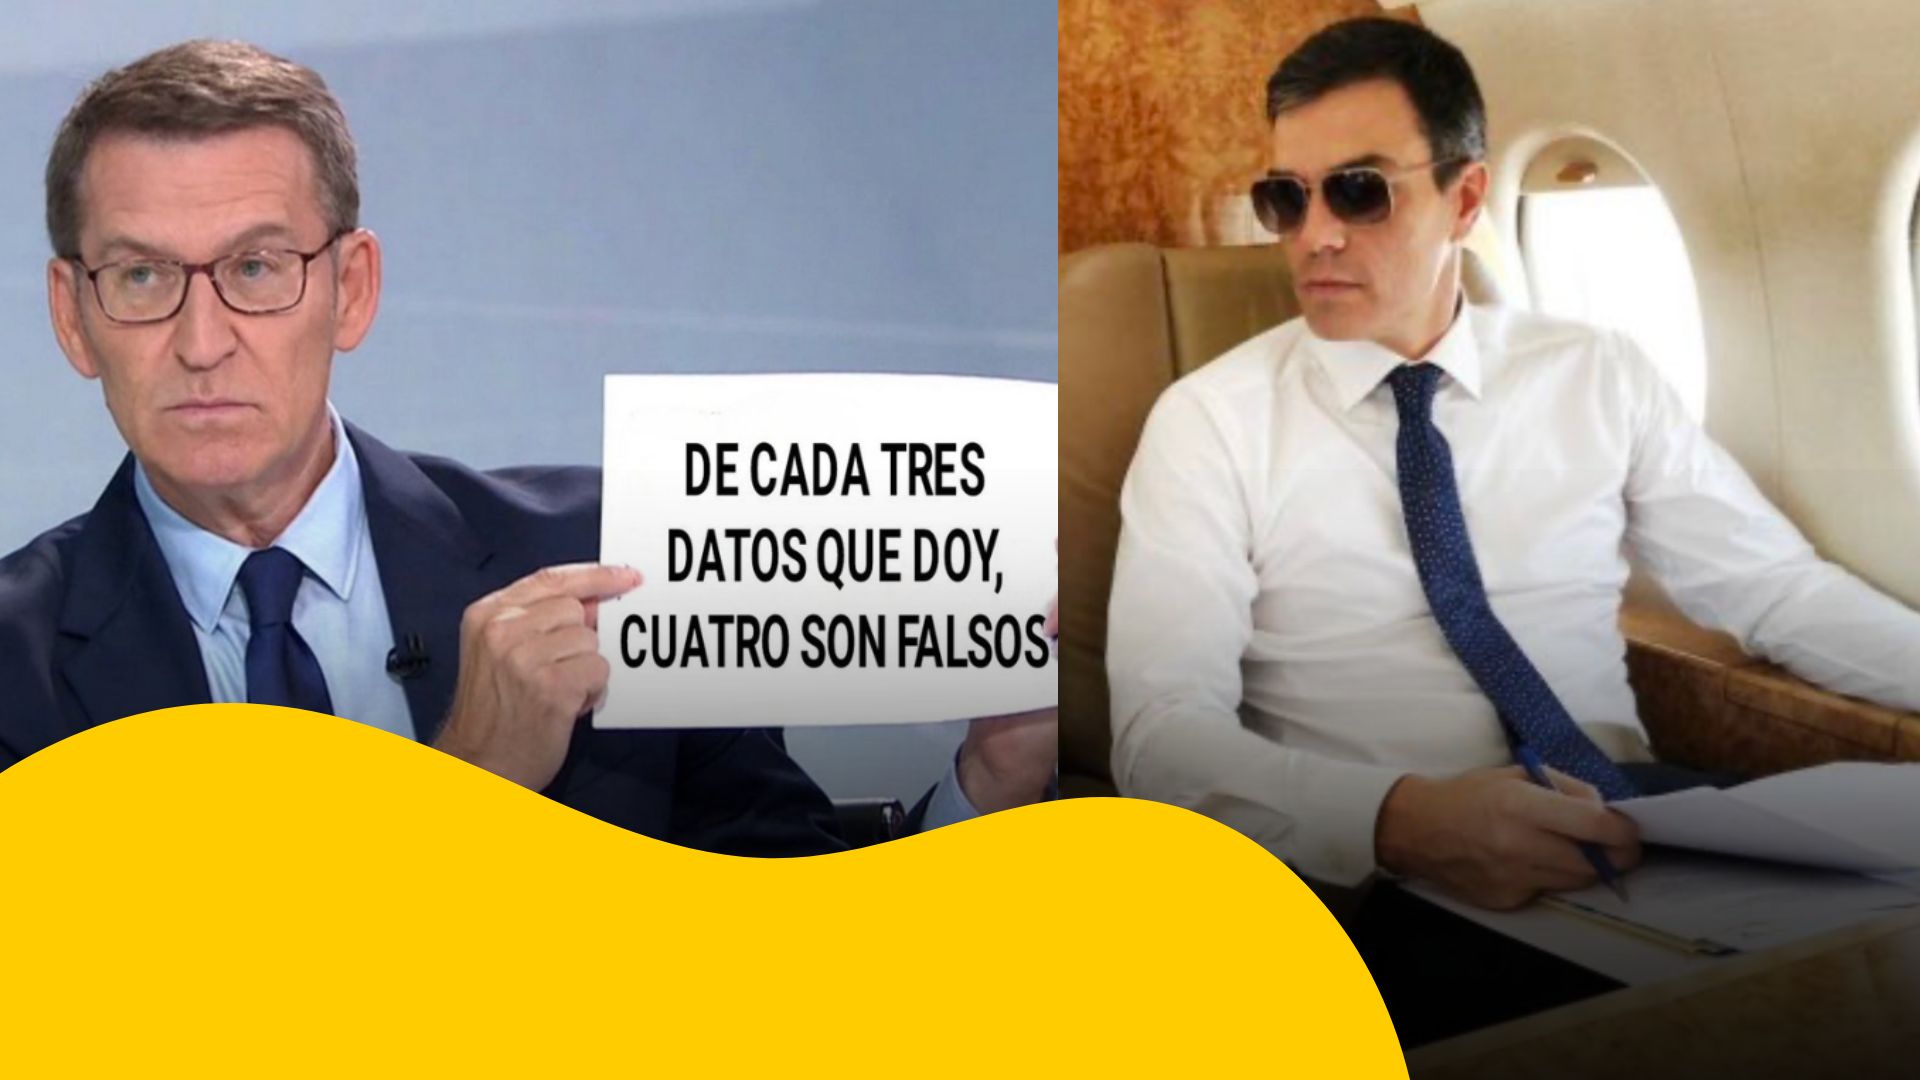 Ácida crítica a Ana Pastor y Vicente Vallés: los memes del debate electoral Sánchez-Feijóo